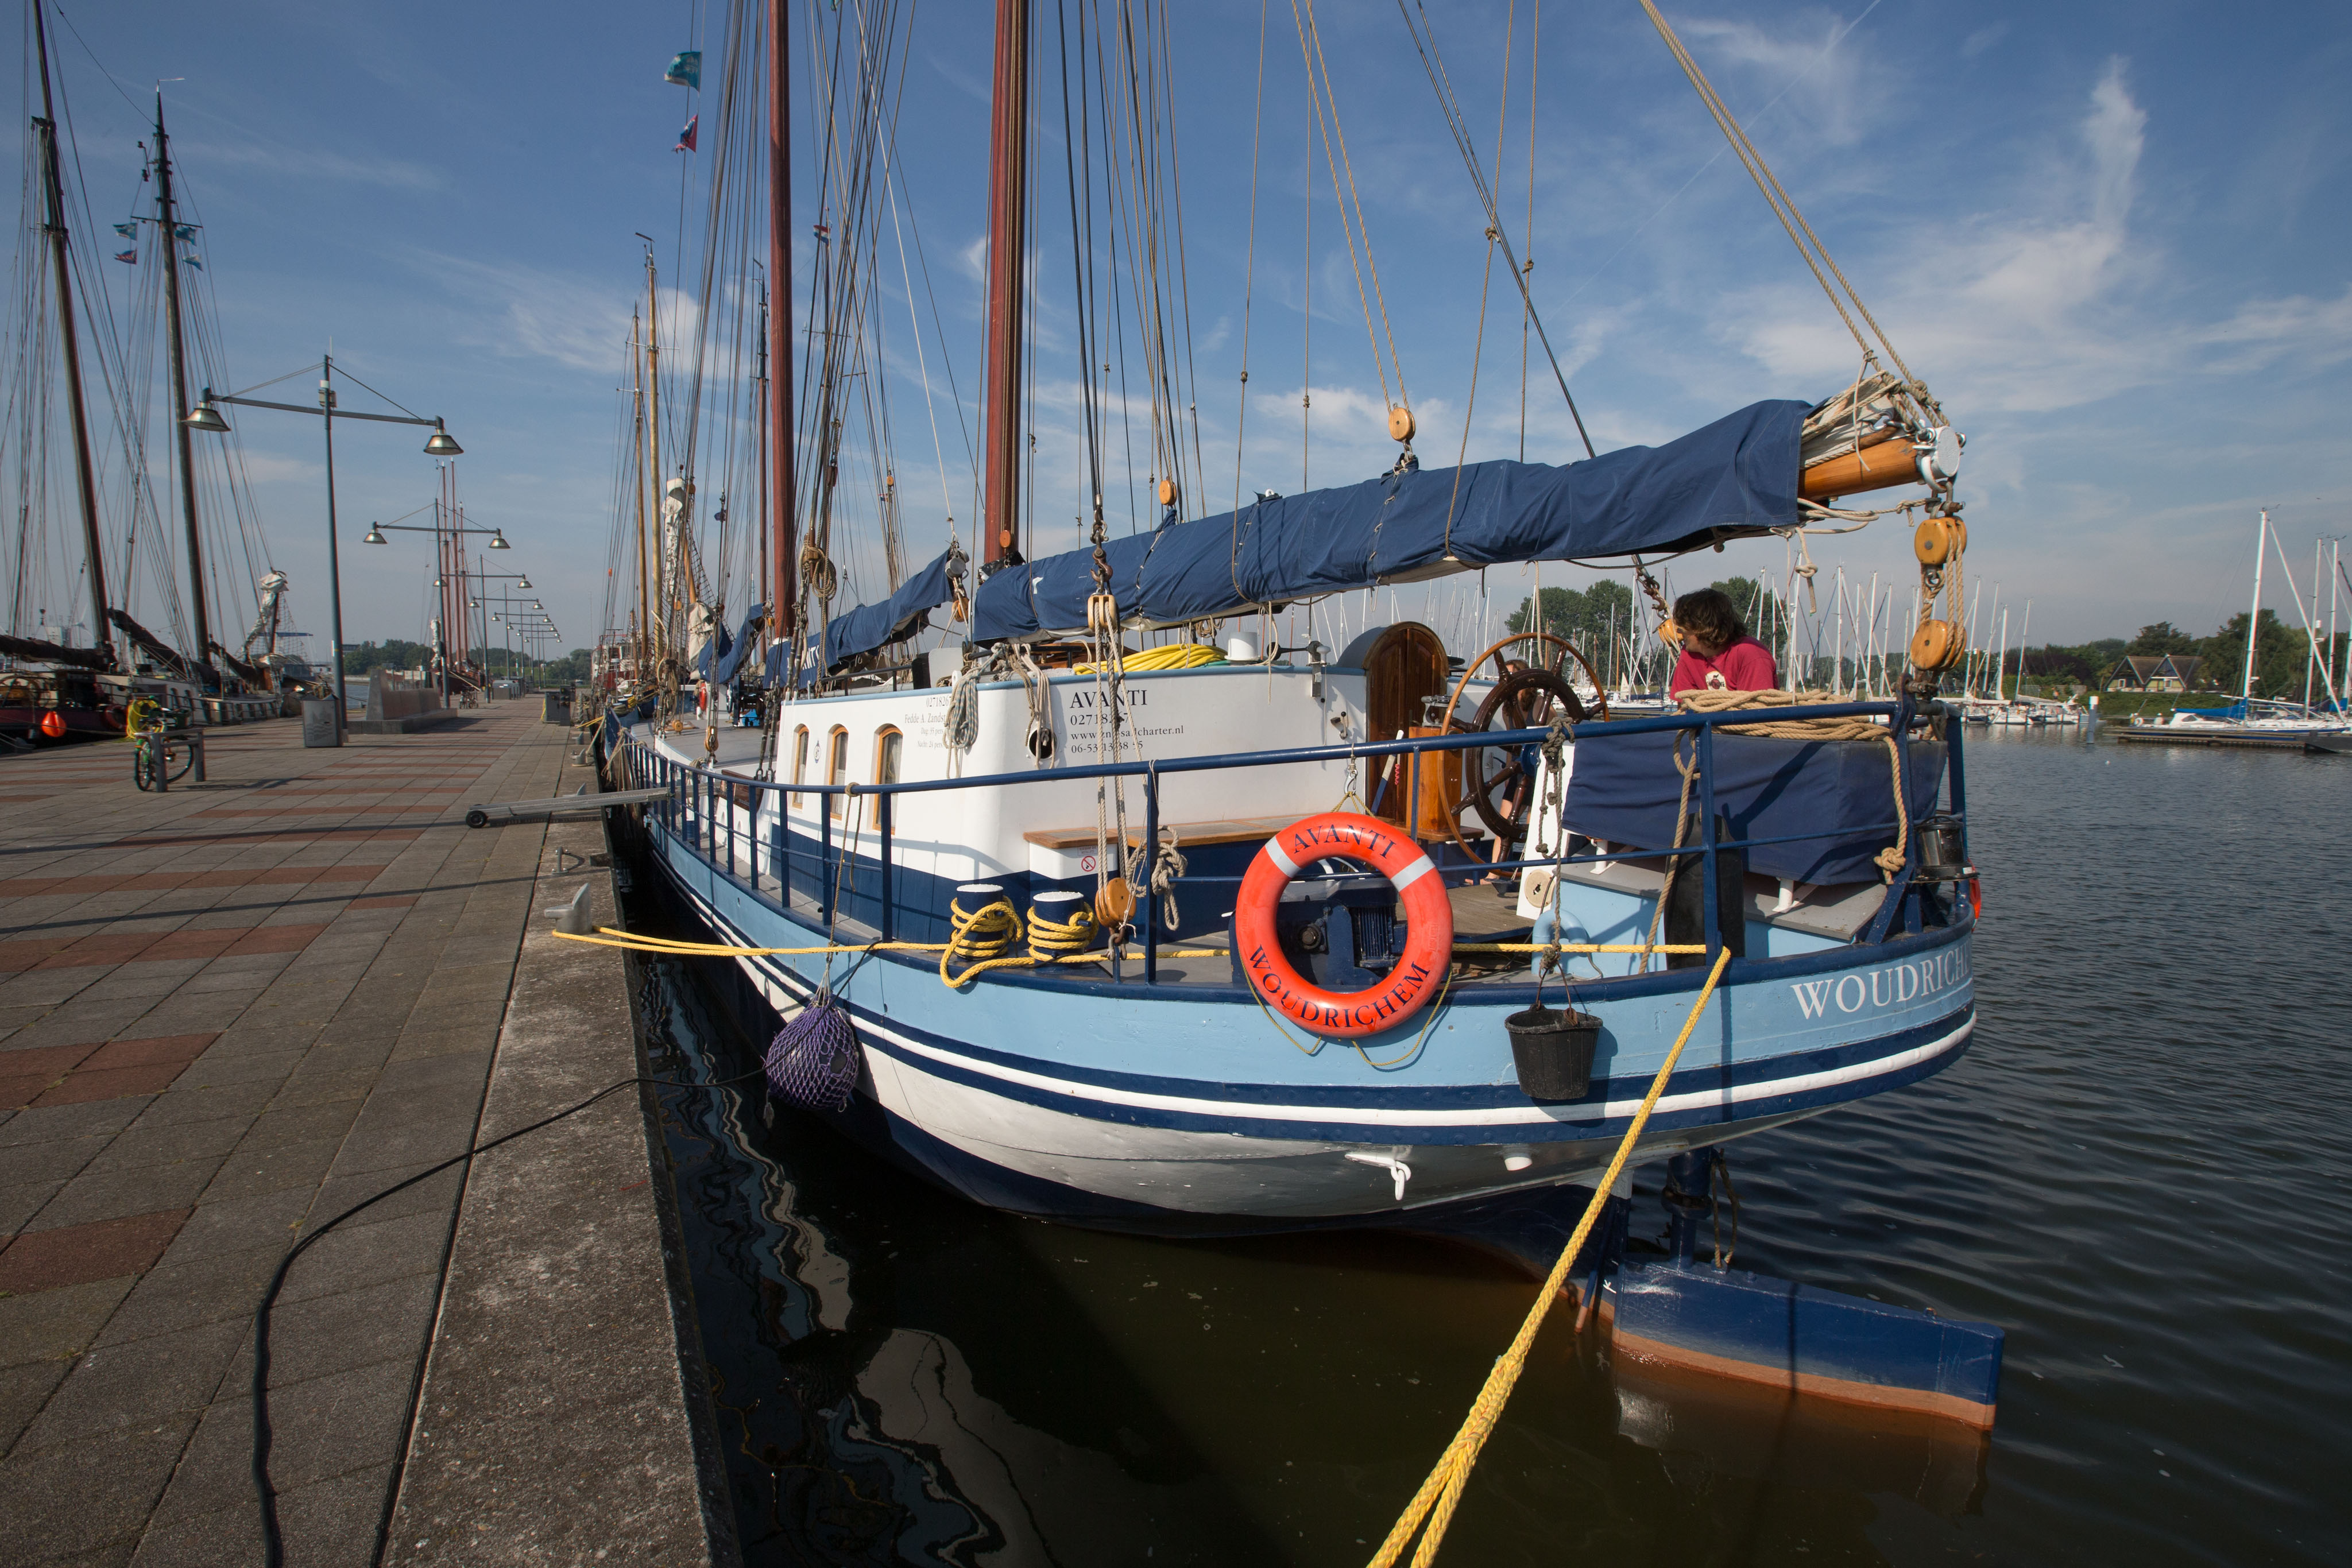 Avanti, ein traditionelles Segelschiff für Ihre Klassenfahrt! 